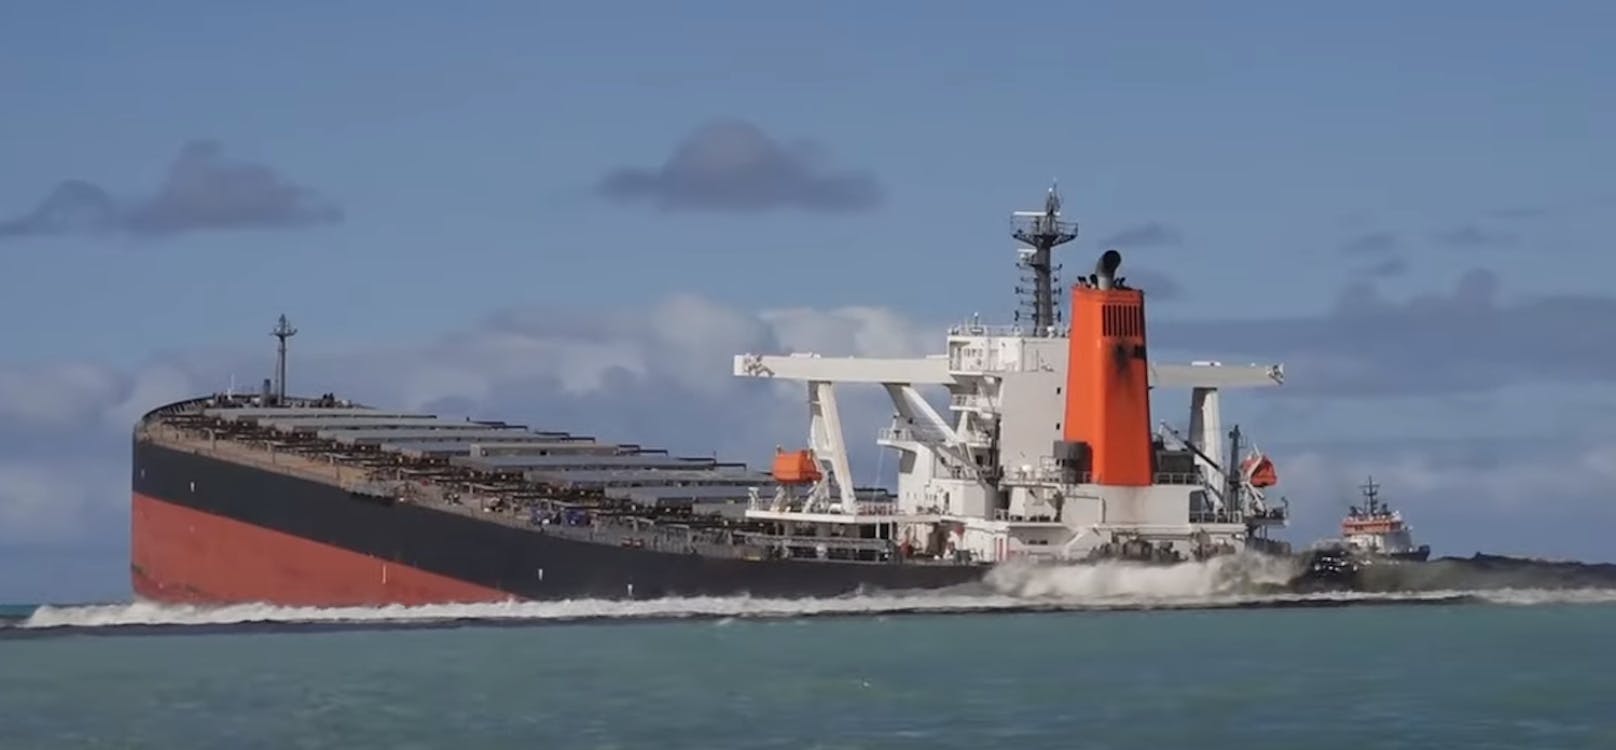 Ölpest vor Mauritius, weil Crew Handyempfang wollte